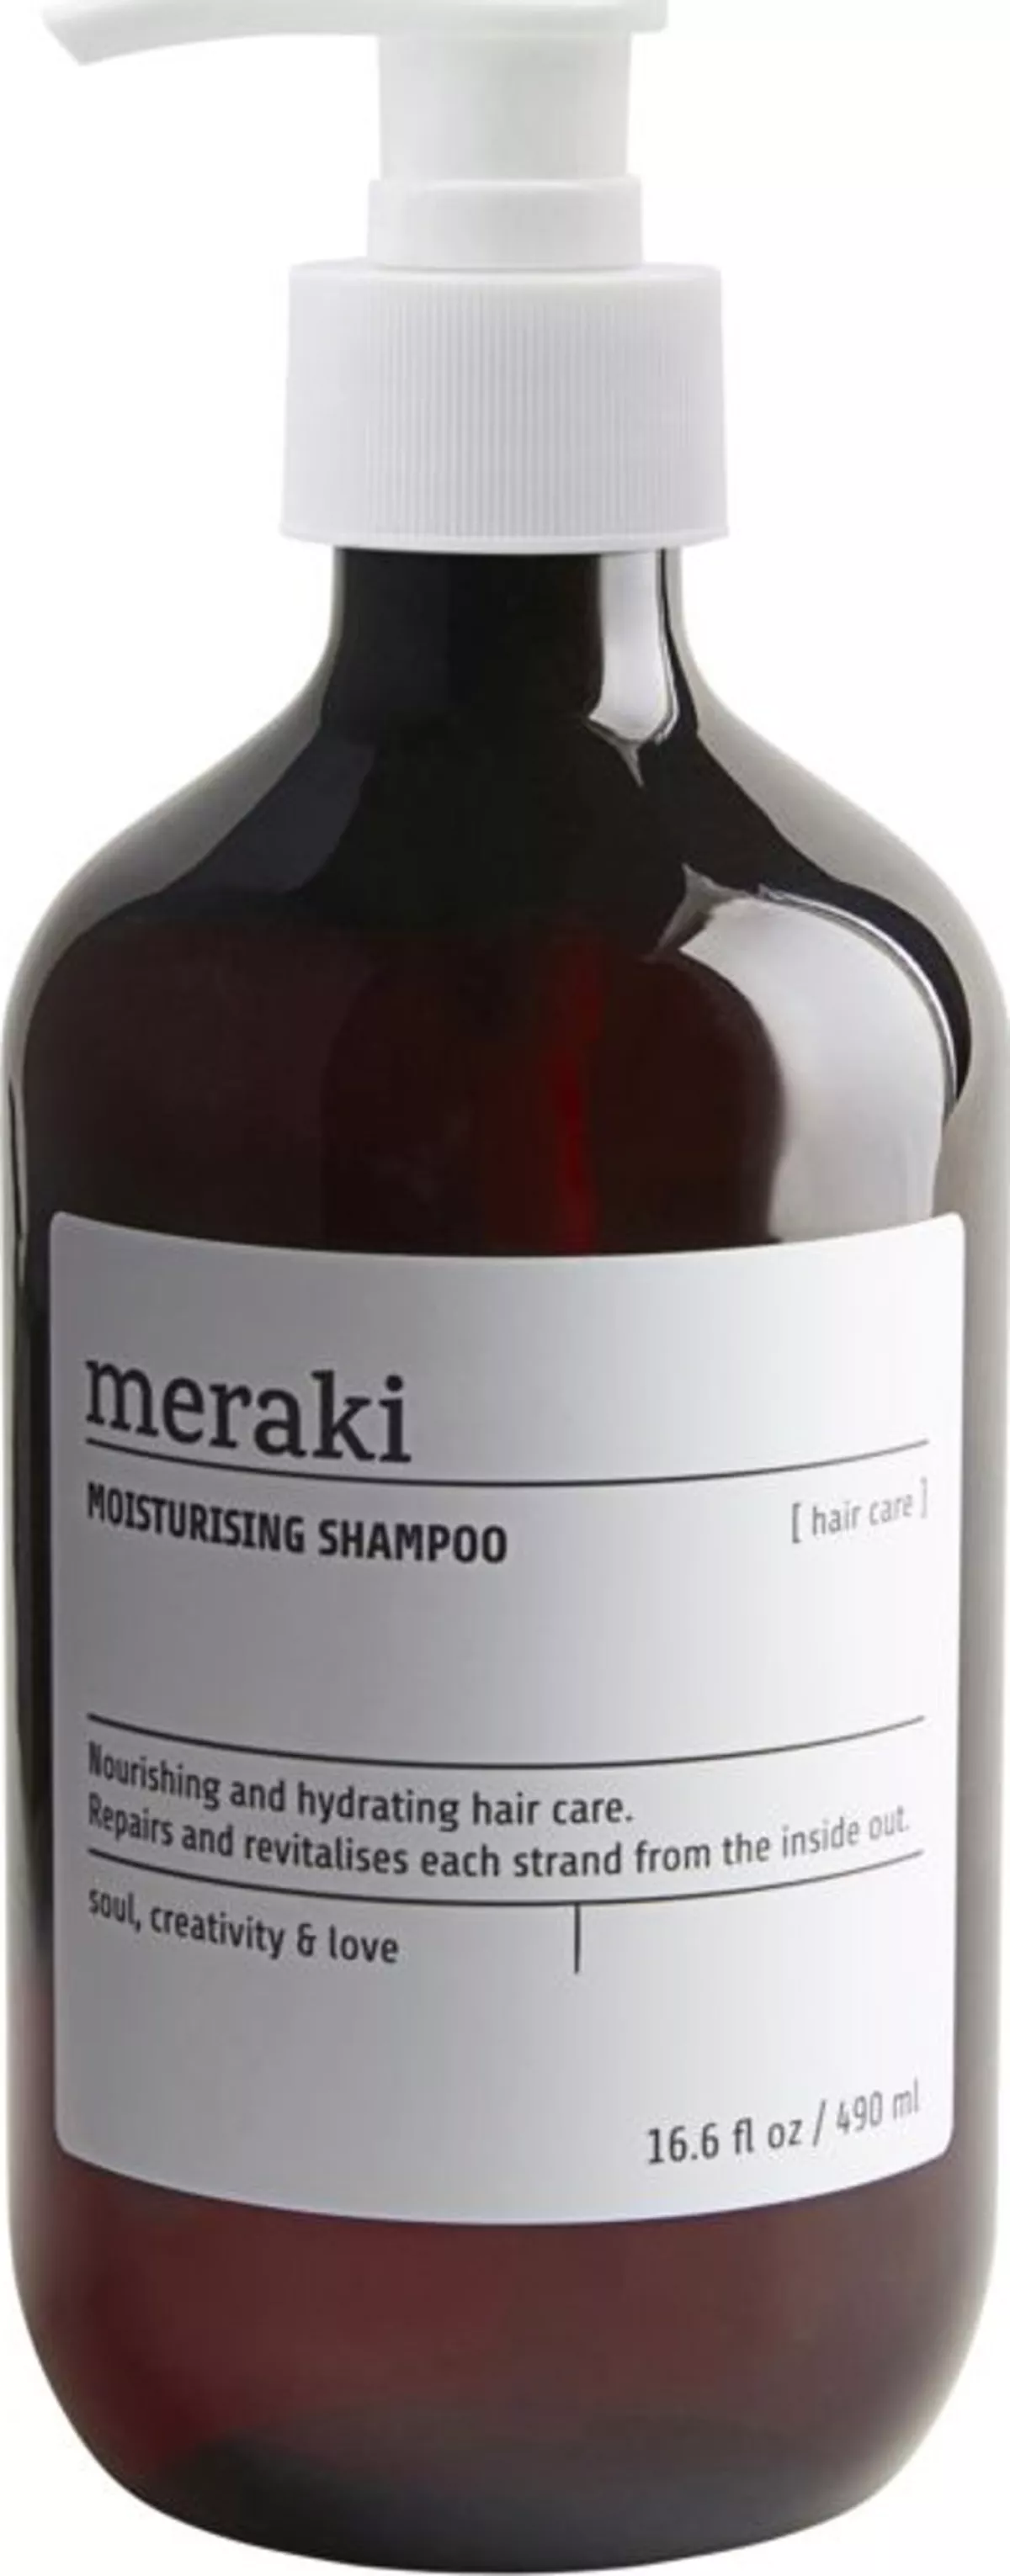 #1 - Moisturising shampoo by Meraki (D: 7 cm. x H: 19 cm., Brun/Hvid)